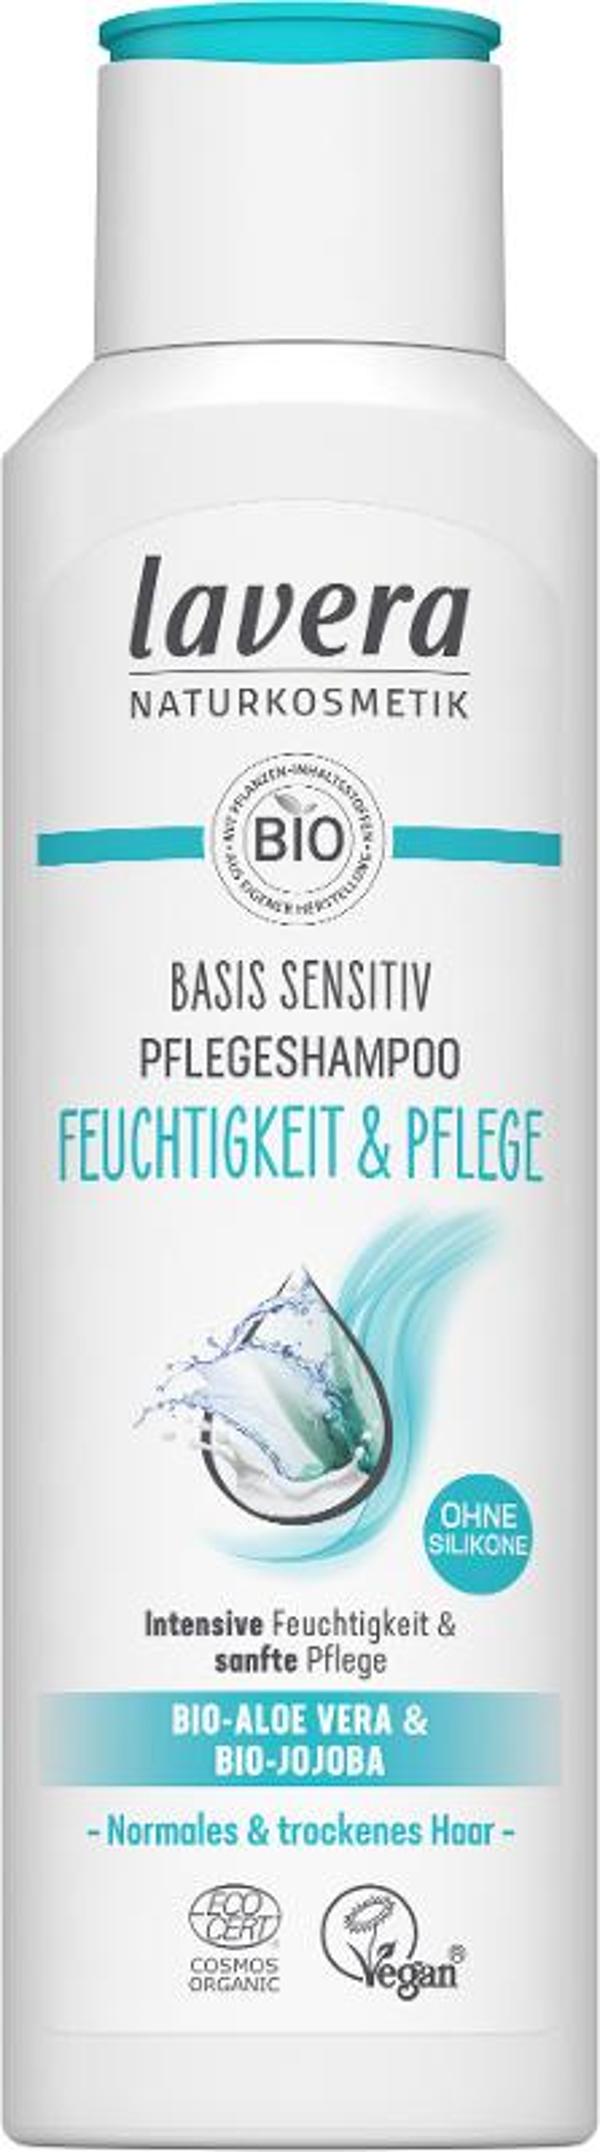 Produktfoto zu Pflegeshampoo basis sensitiv Feuchtigkeit und Pflege, 250ml